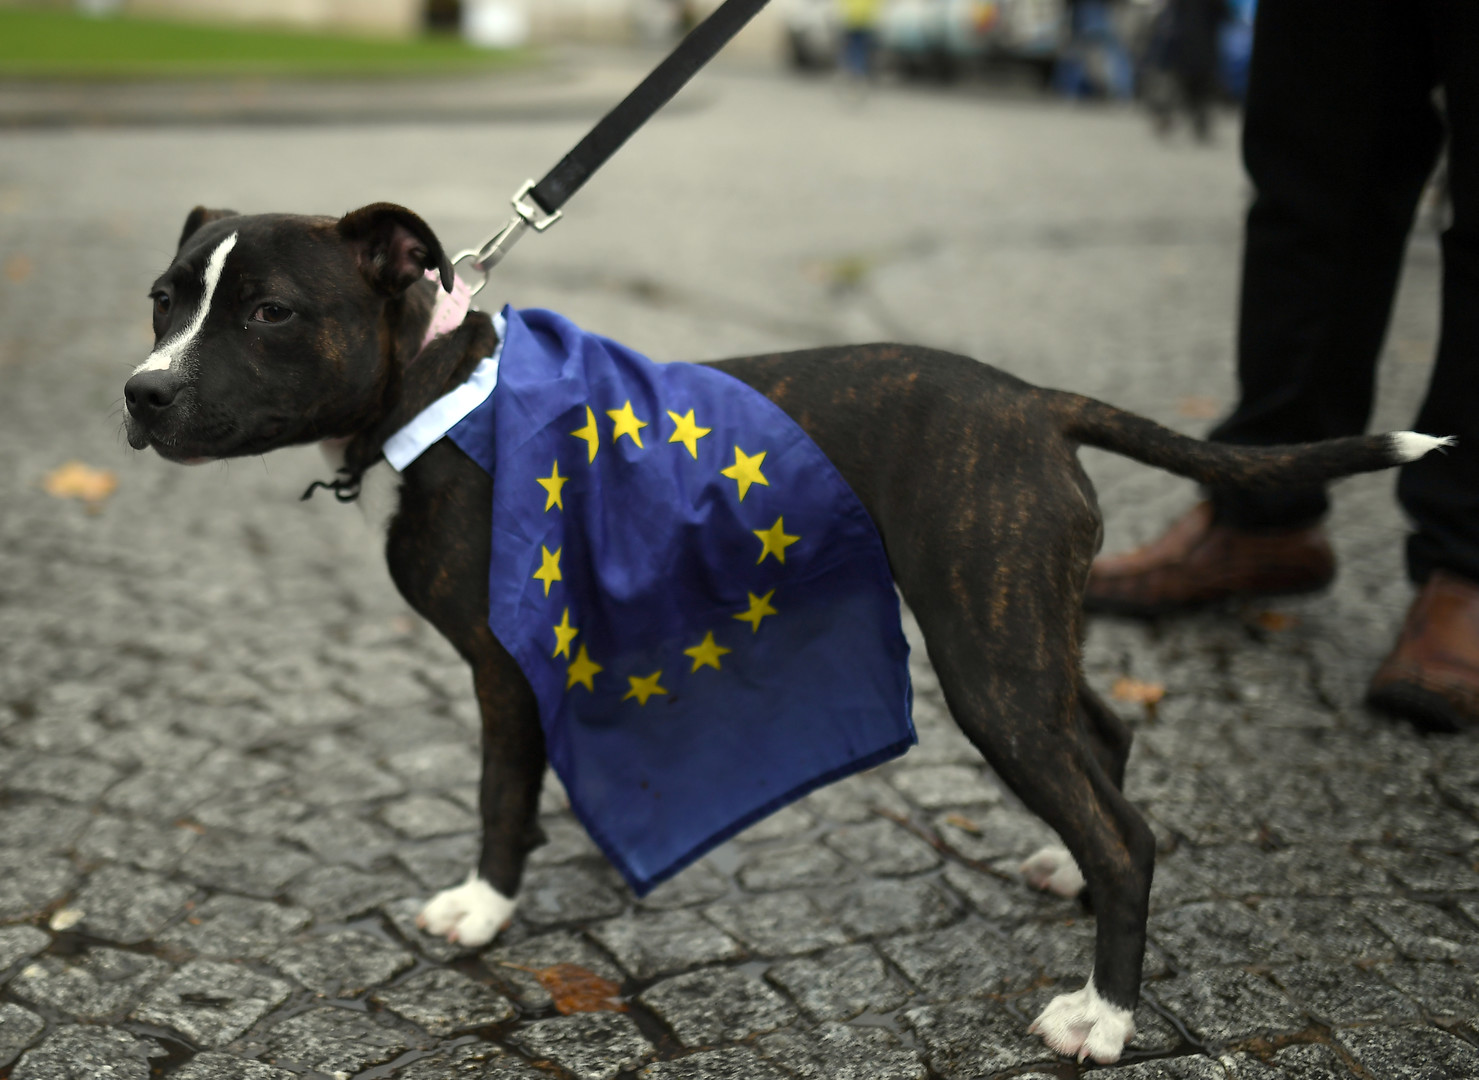 Plus dociles que les humains ? Des chiens défilent contre le Brexit (IMAGES)